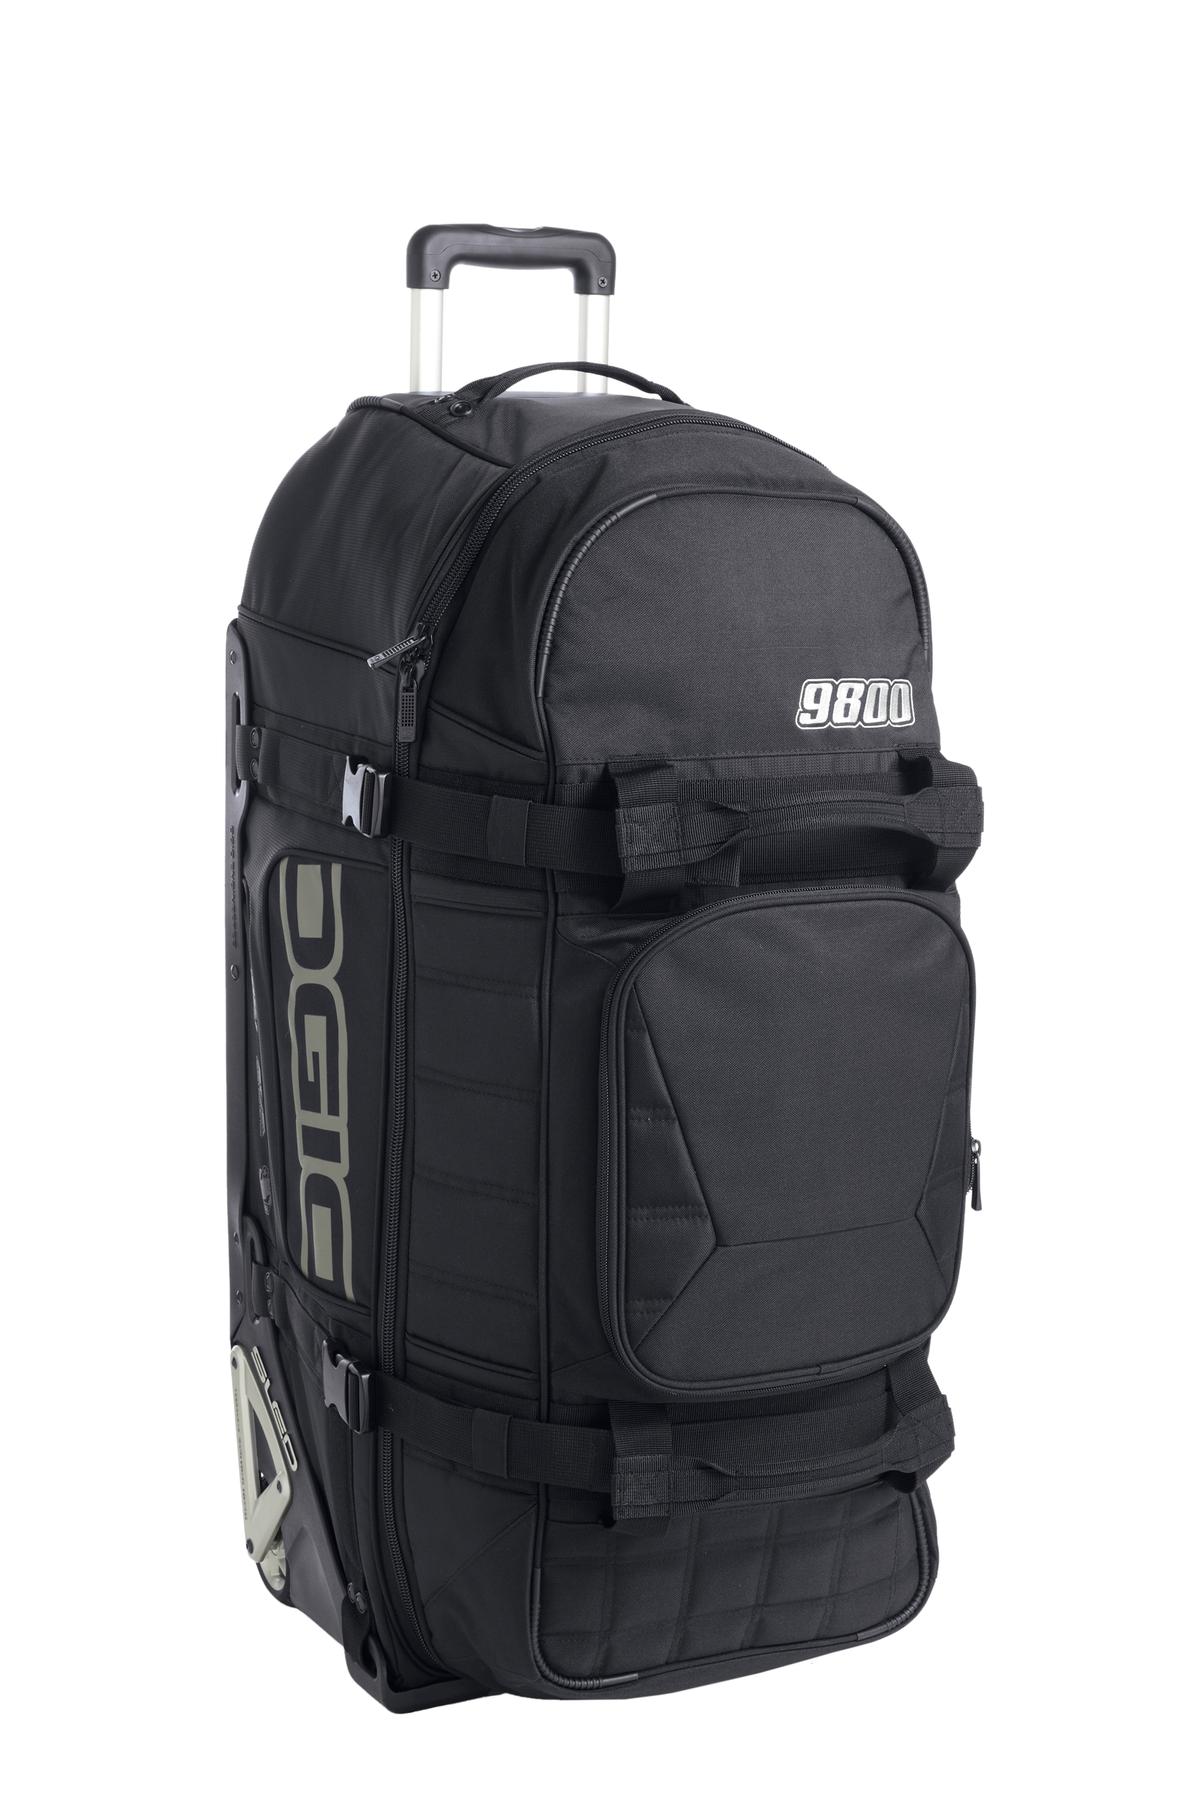 OGIO - 9800 Travel Bag-